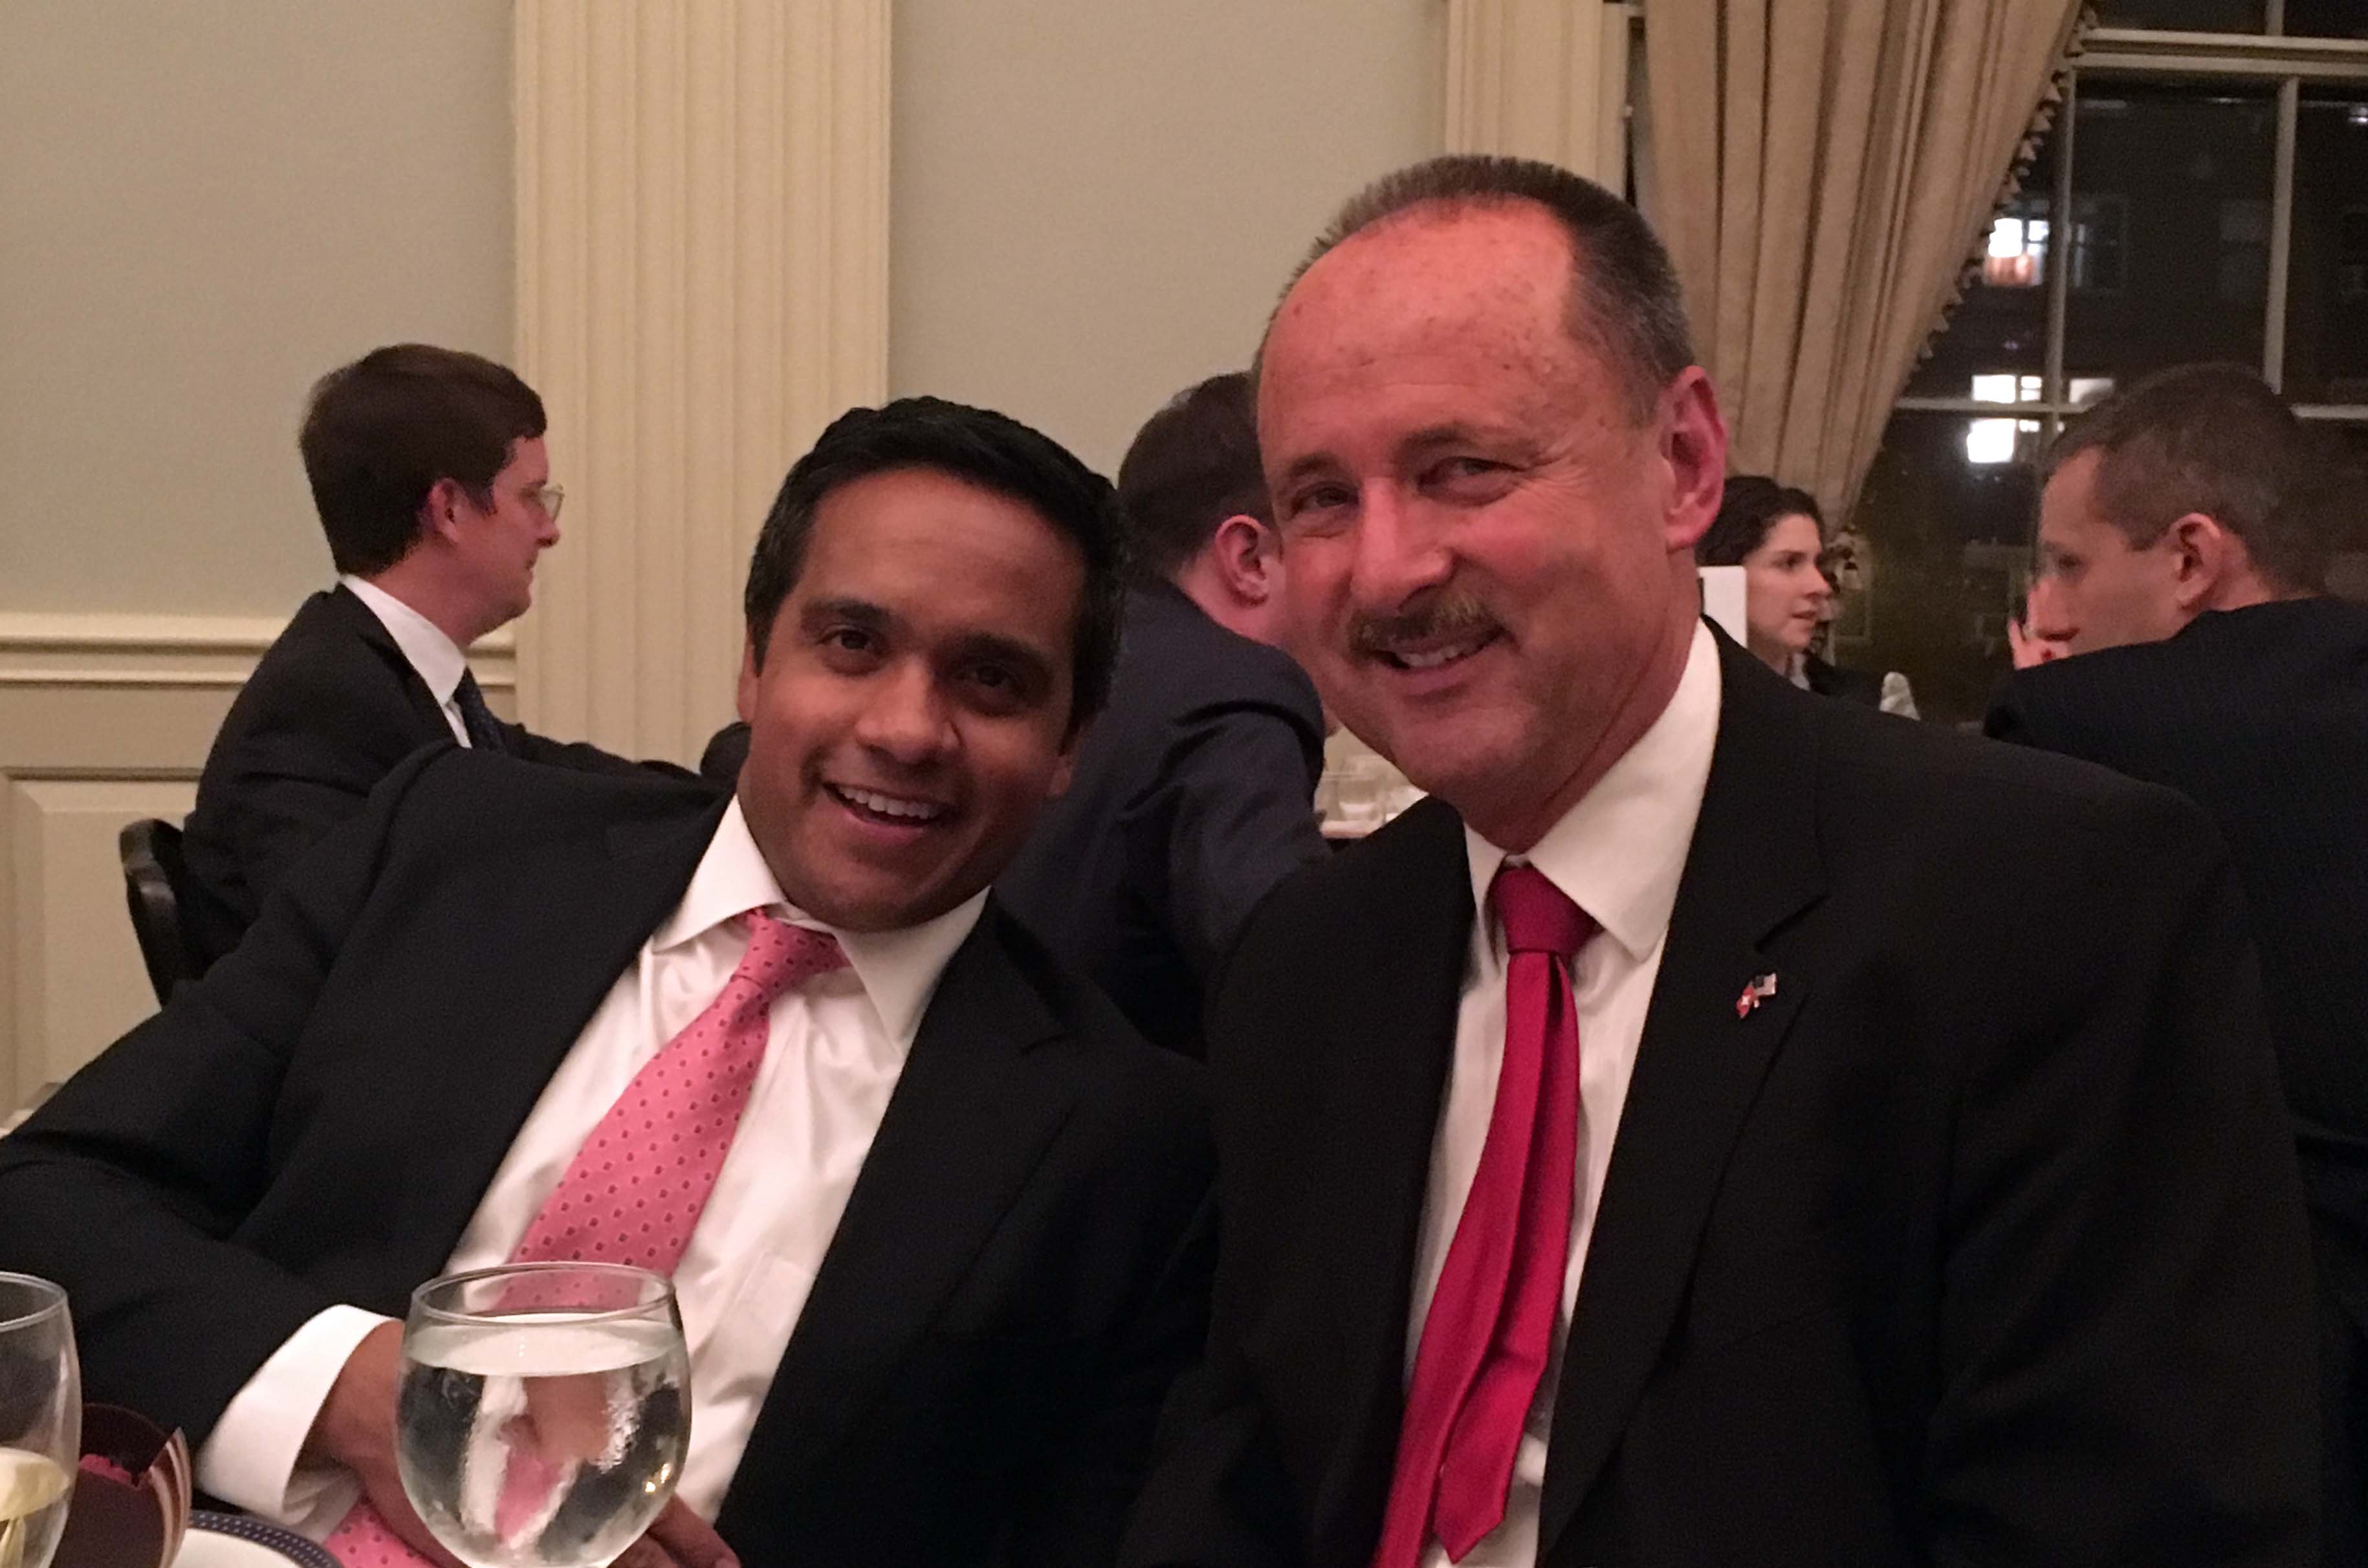 Ambassador Schaller and Manu Raju